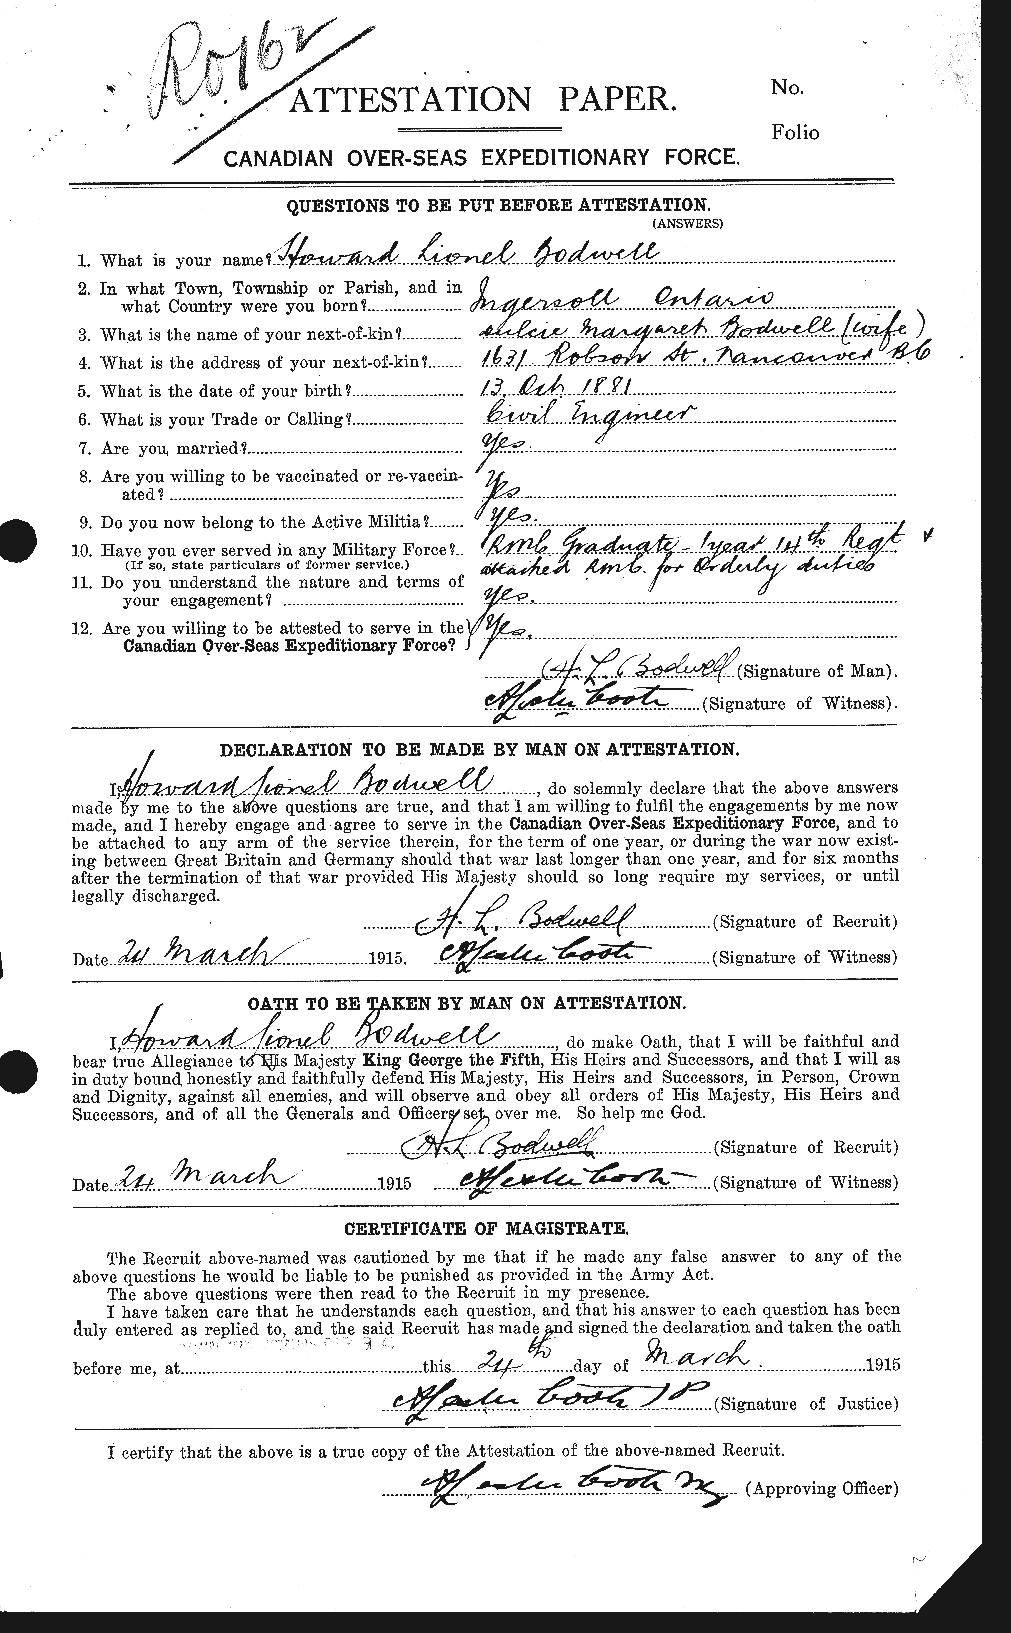 Dossiers du Personnel de la Première Guerre mondiale - CEC 200029a